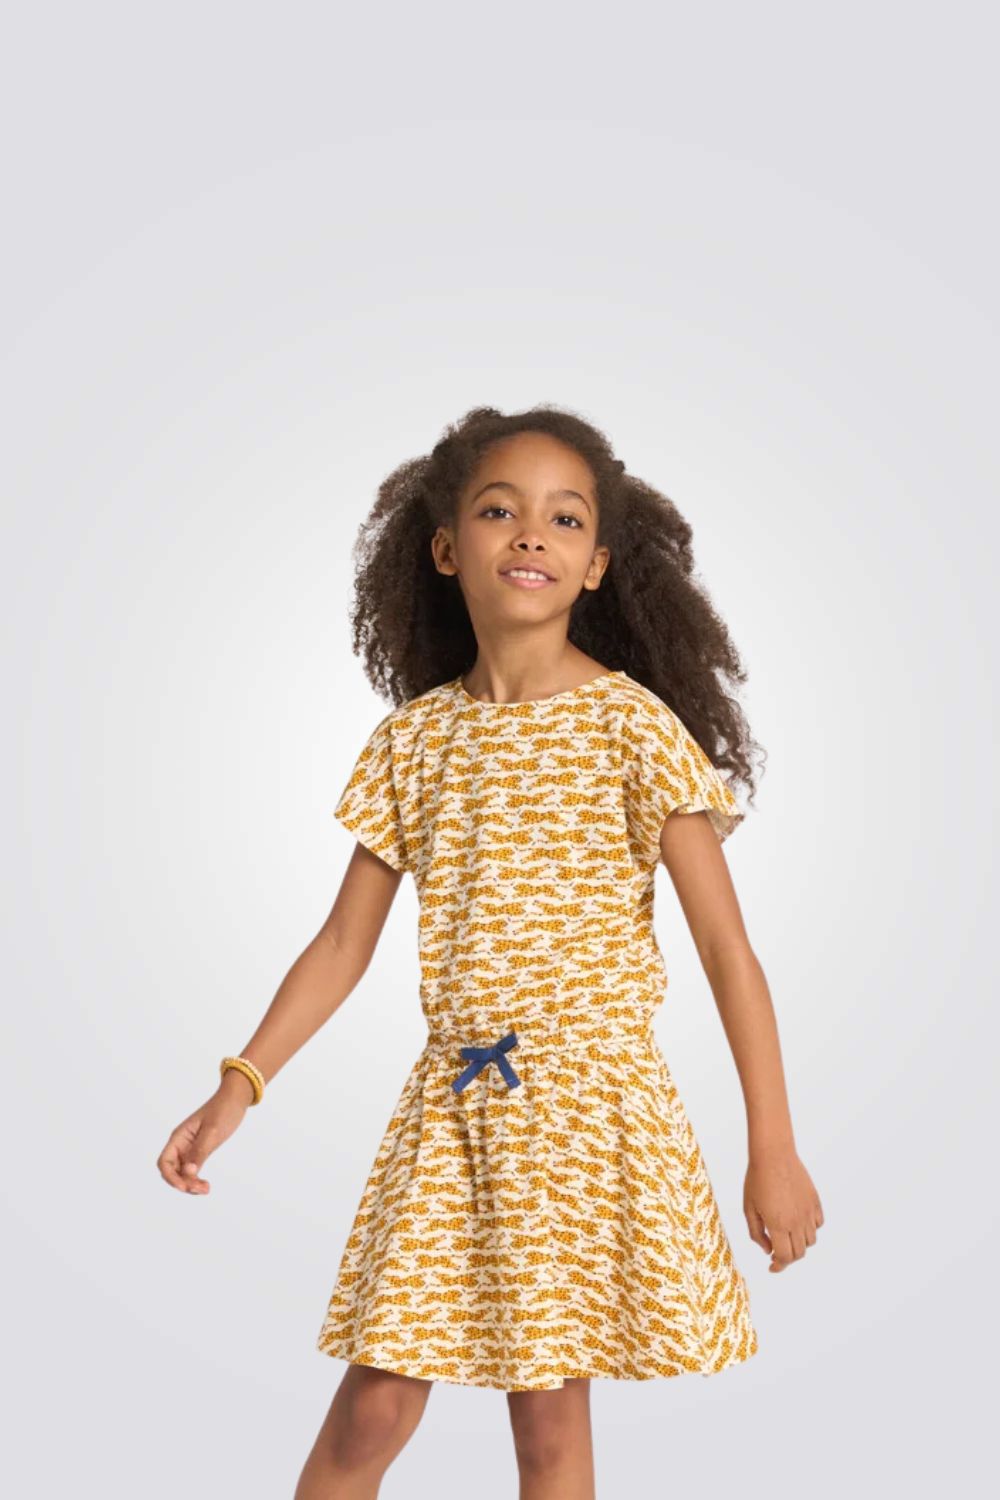 שמלה לילדות בצבע צהוב עם הדפס נמרים